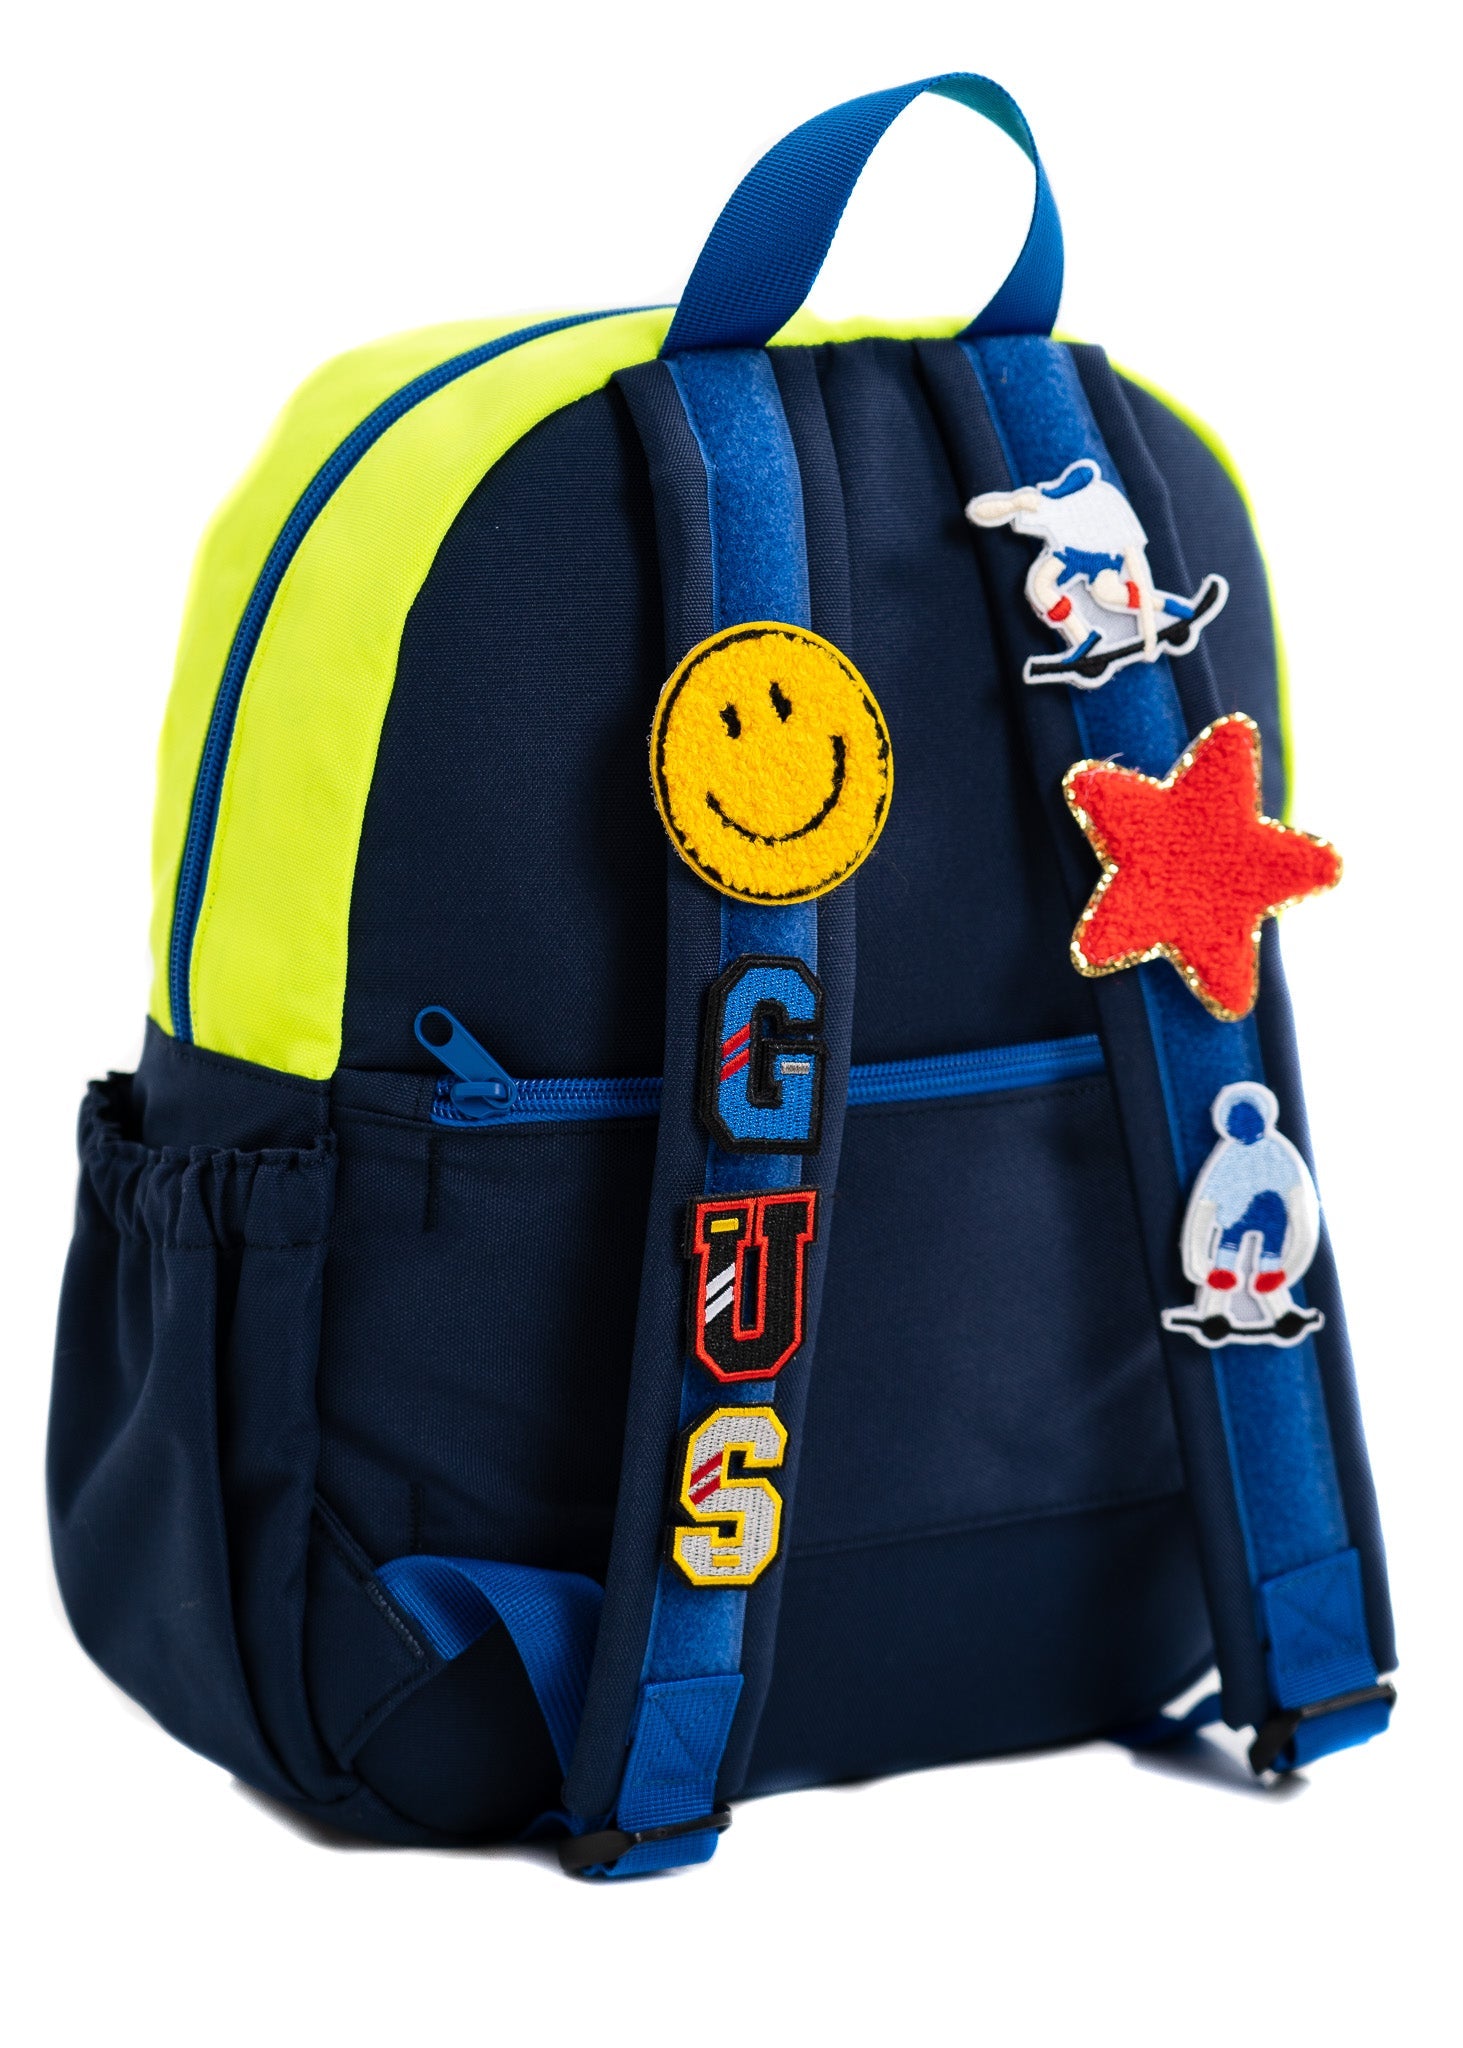 Hook & Loop Sport Kids Backpack - Royal / Neon